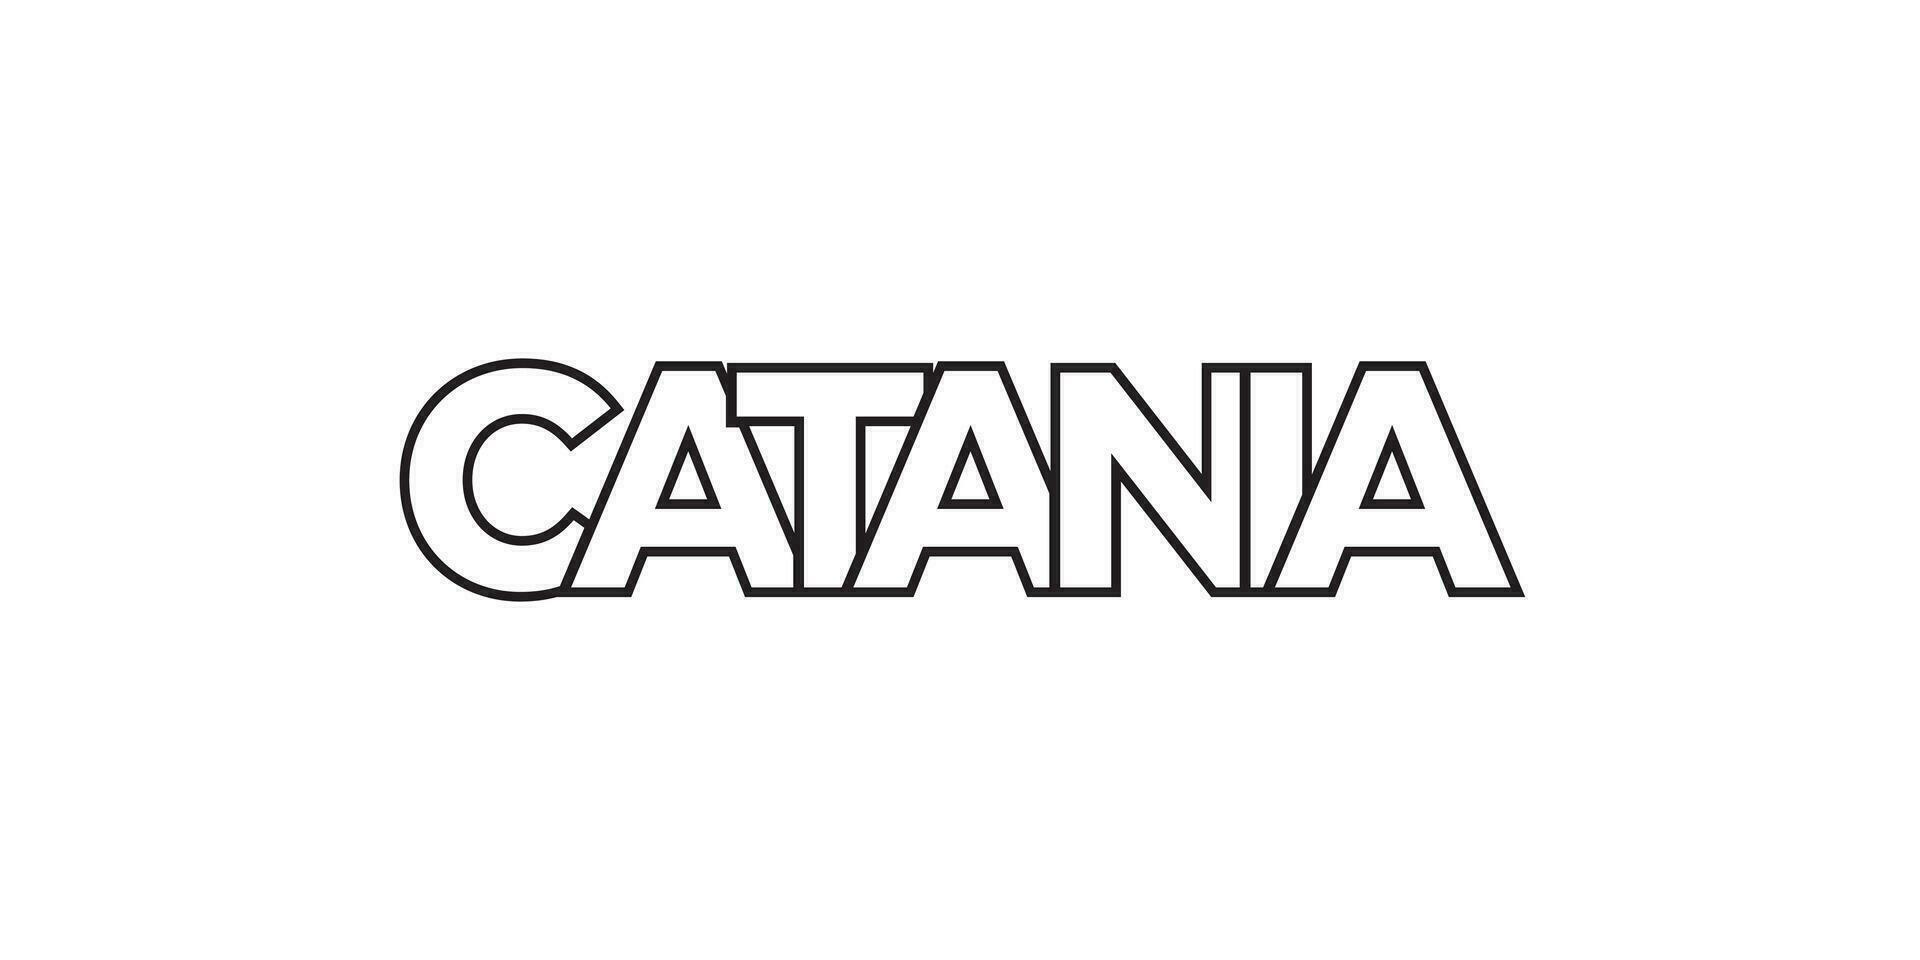 catania in de italia embleem. de ontwerp Kenmerken een meetkundig stijl, vector illustratie met stoutmoedig typografie in een modern lettertype. de grafisch leuze belettering.